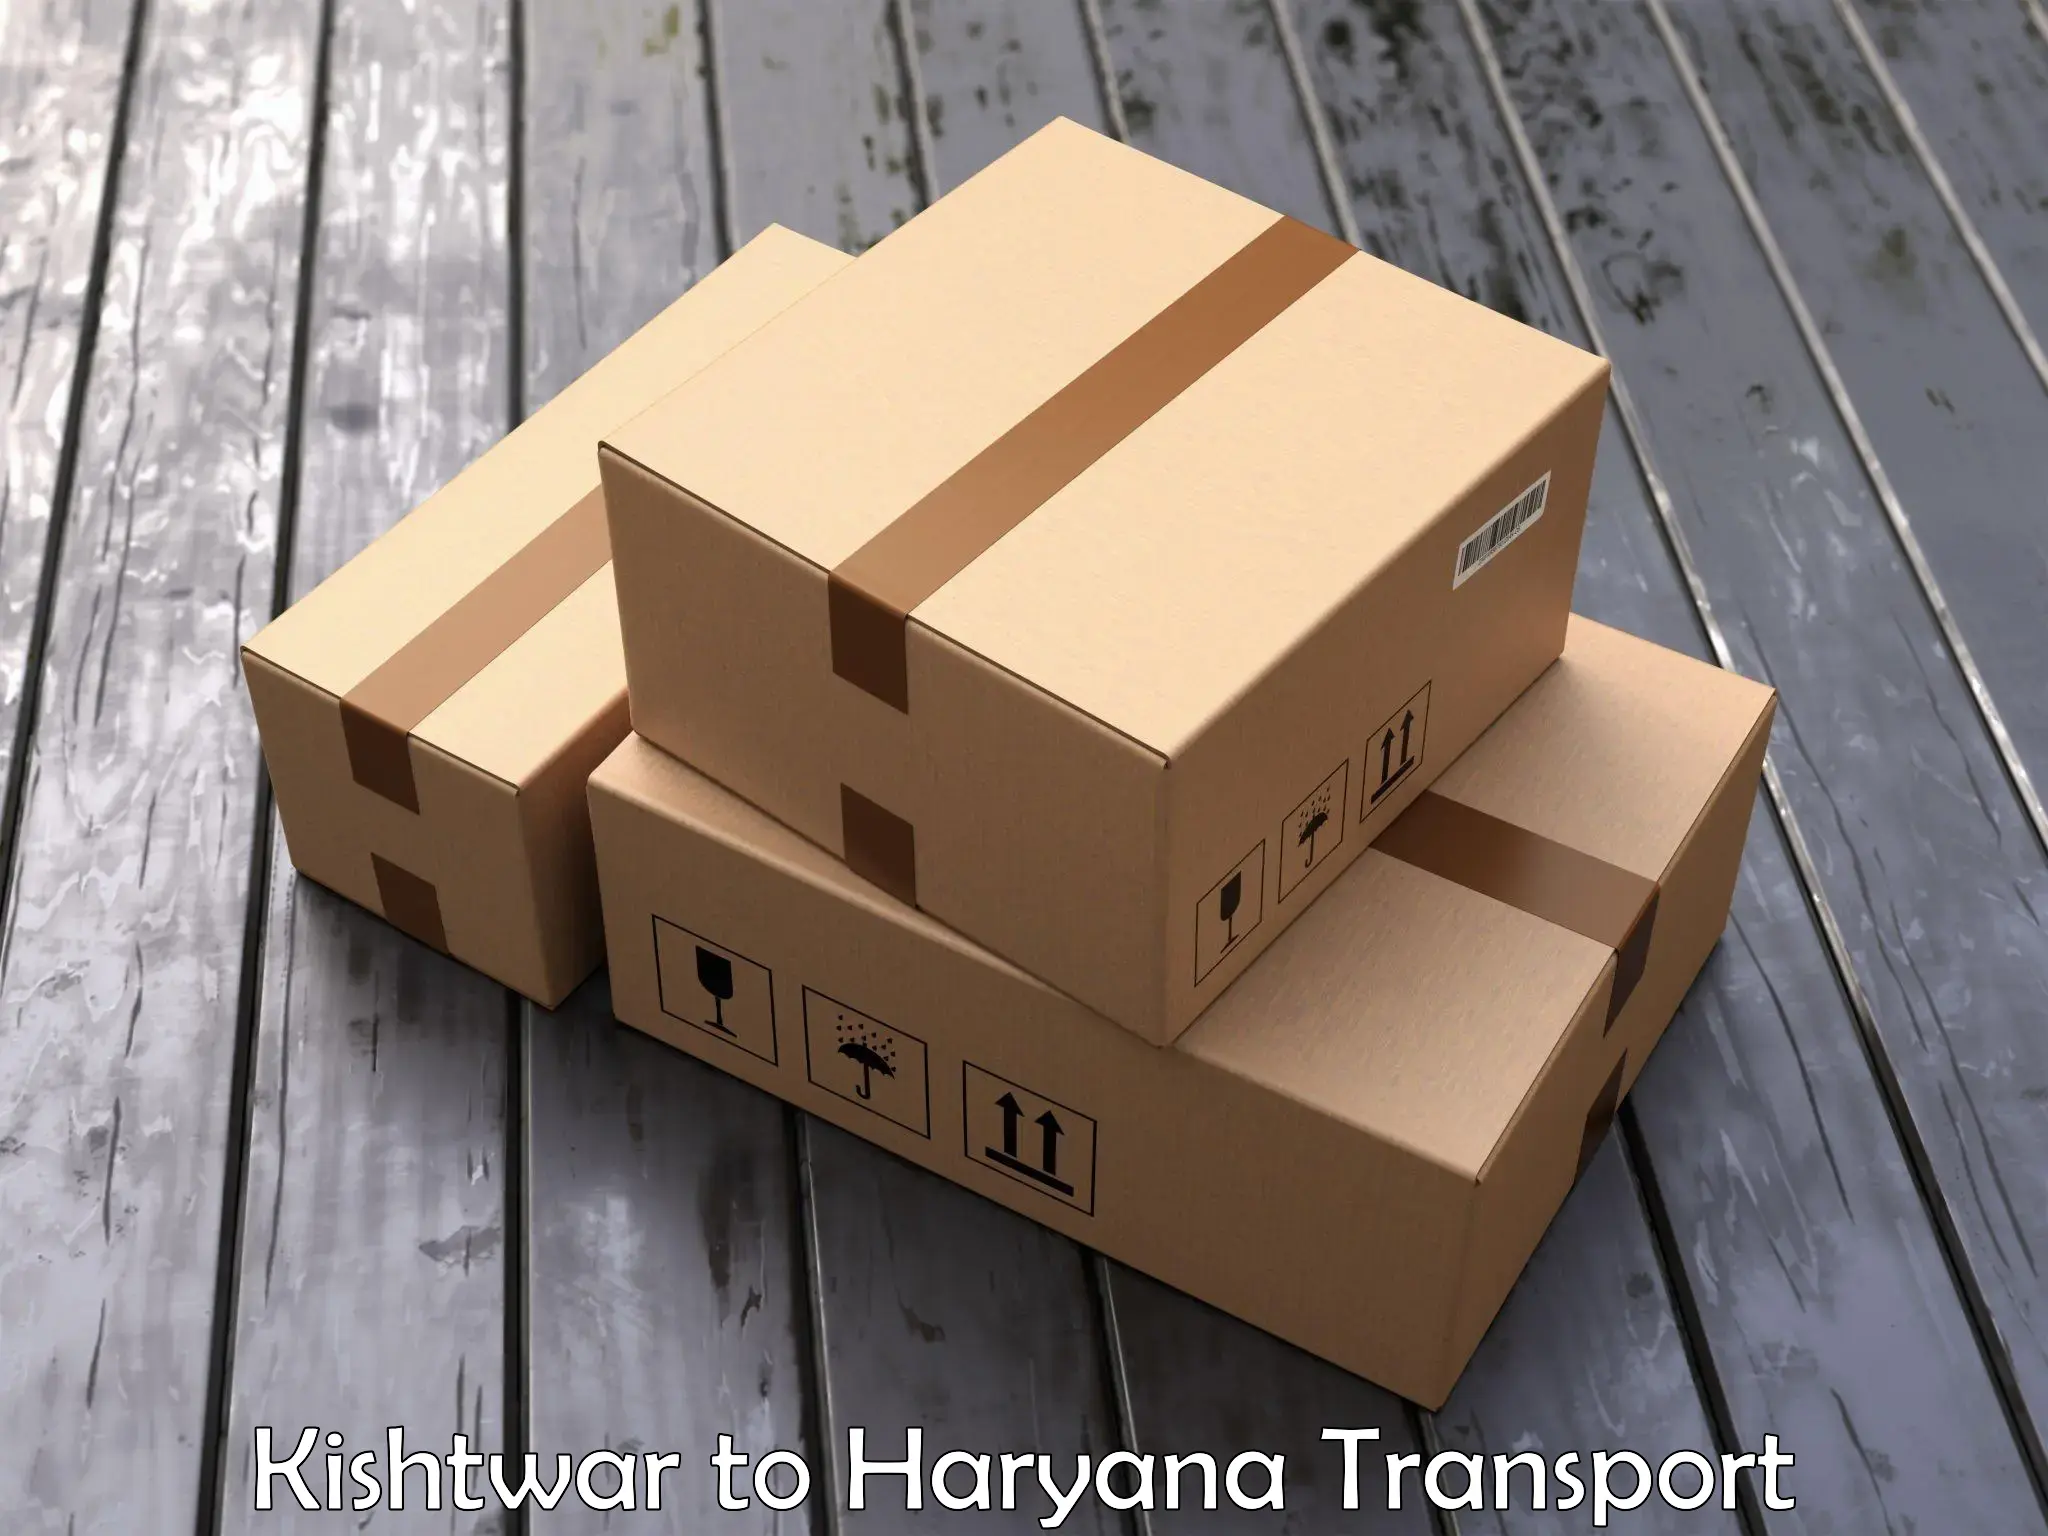 Part load transport service in India Kishtwar to IIIT Sonepat